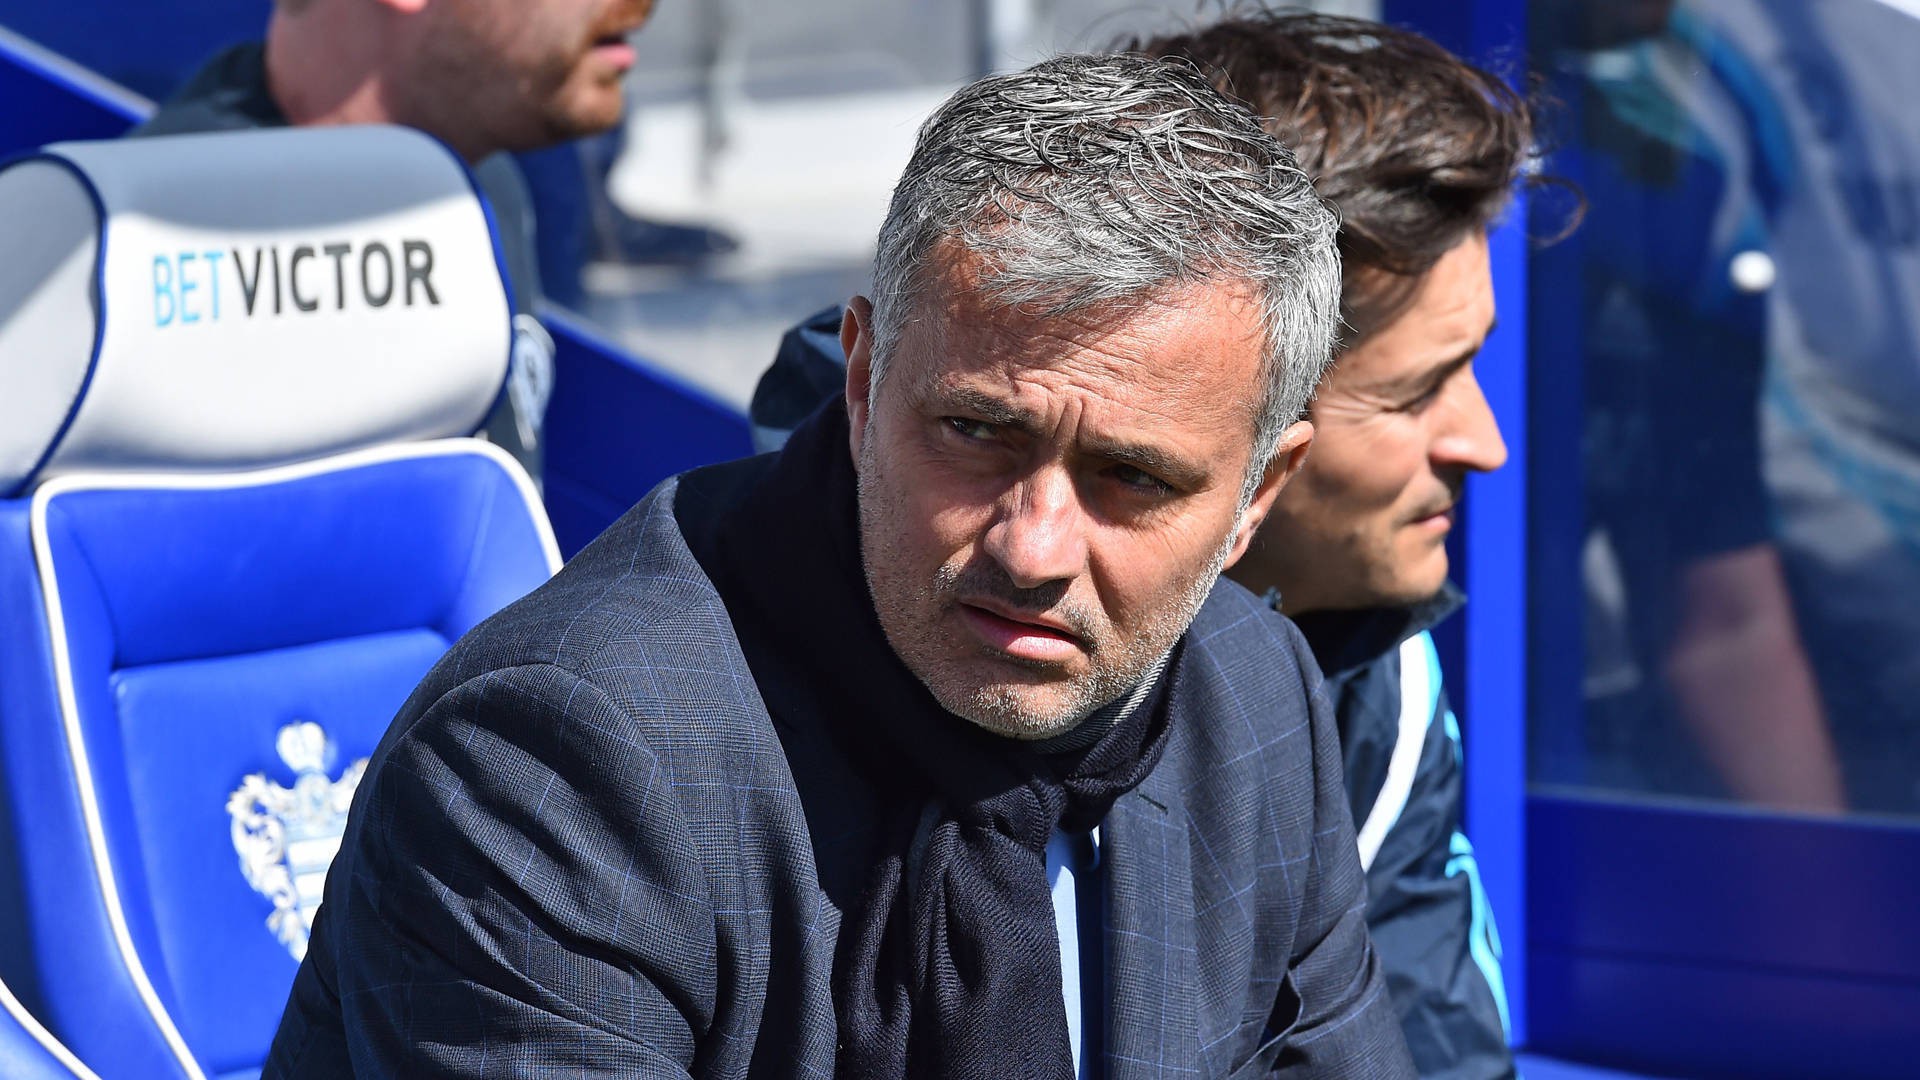 Băng ghế huấn luyện của Chelsea không còn hình ảnh của HLV Mourinho nữa